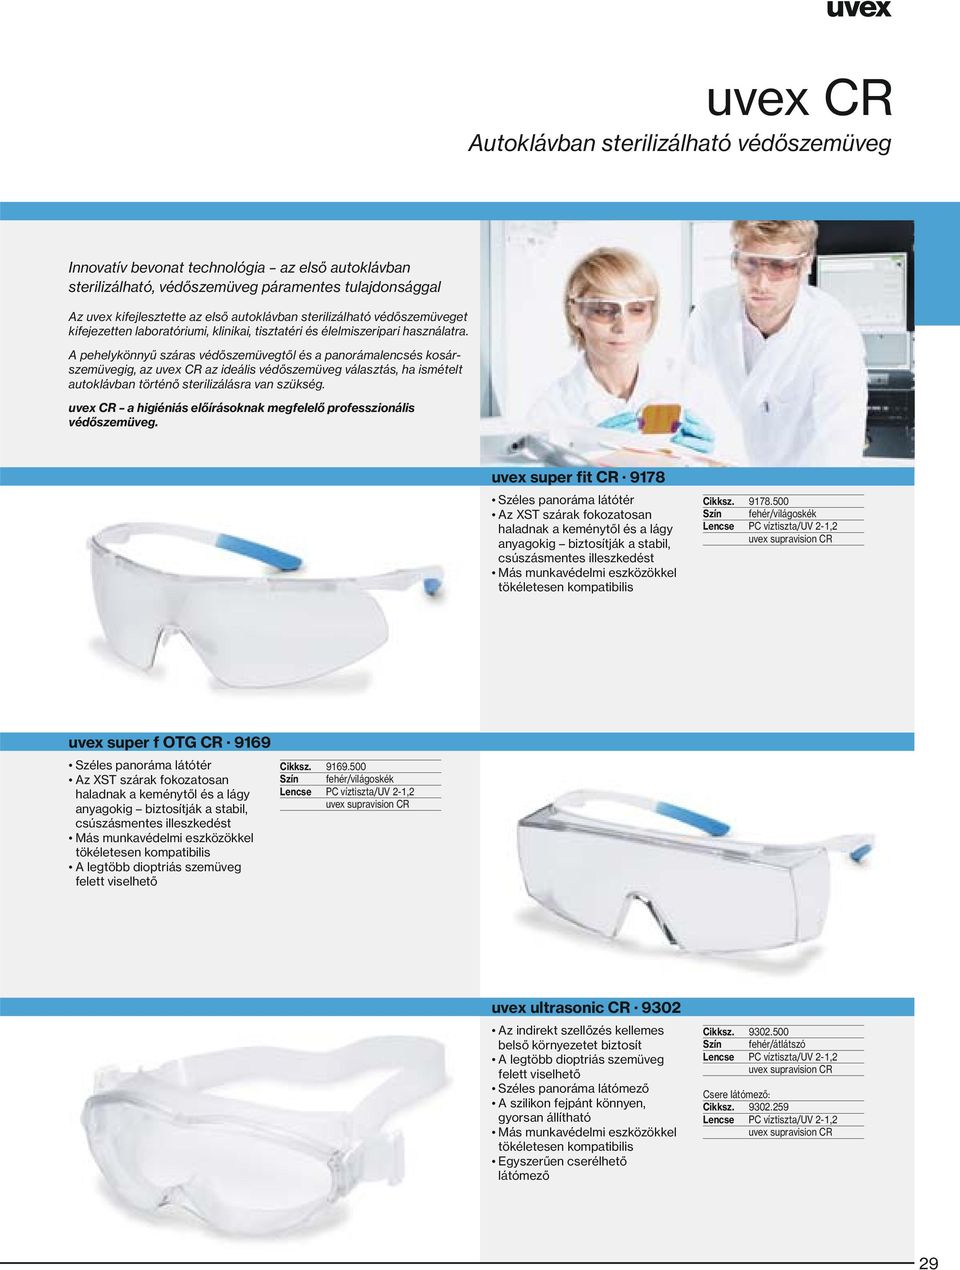 A pehelykönnyű száras védőszemüvegtől és a panorámalencsés kosárszemüvegig, az uvex CR az ideális védőszemüveg választás, ha ismételt autoklávban történő sterilizálásra van szükség.